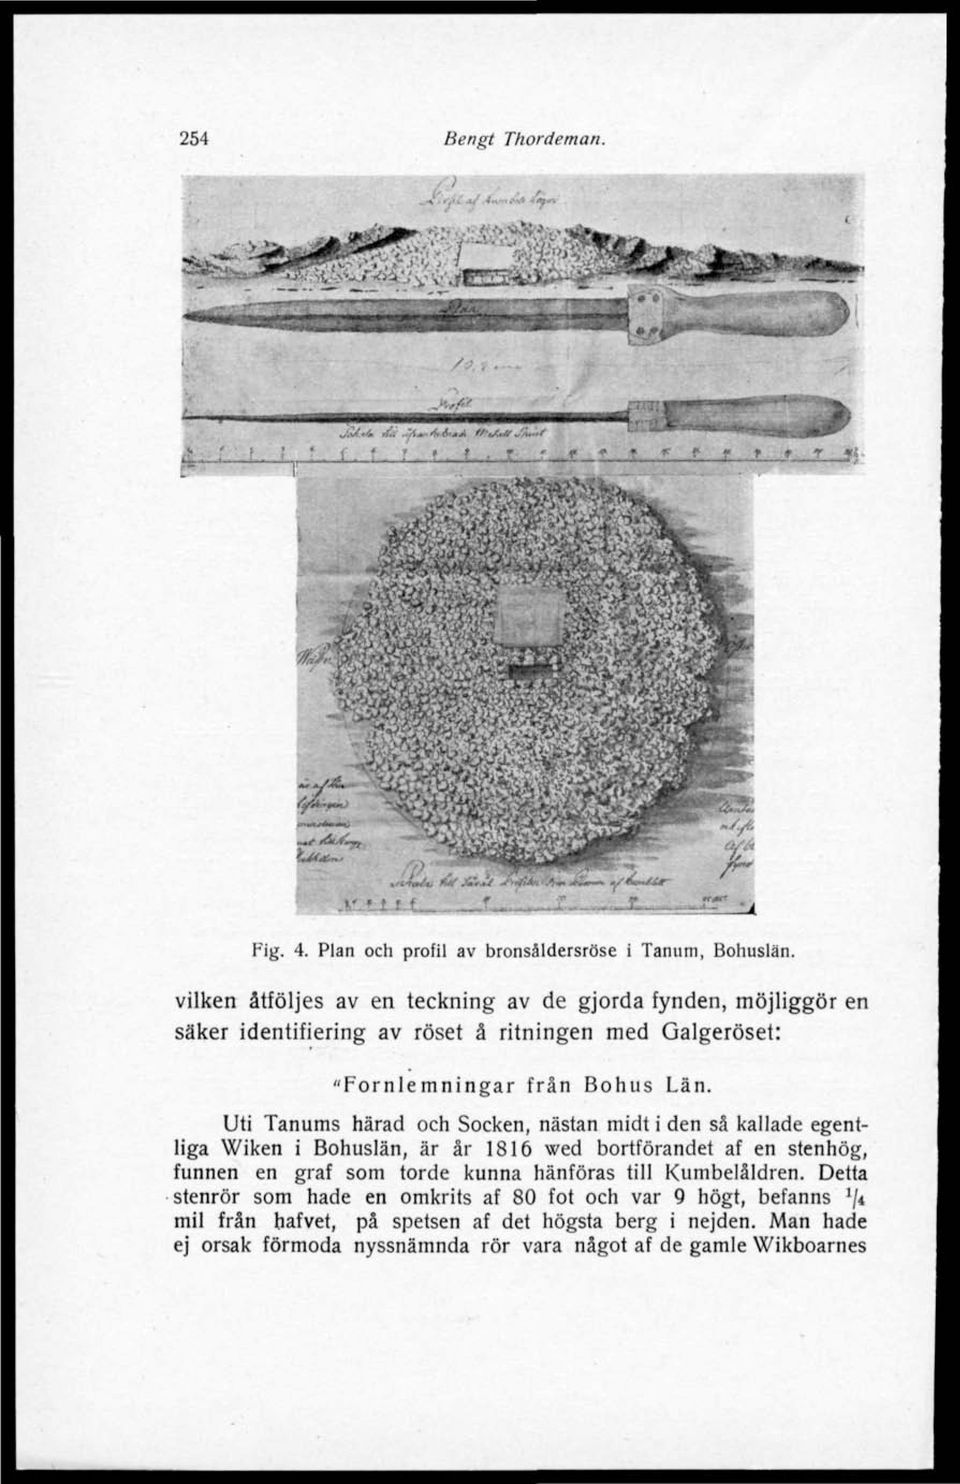 Uti Tanums härad och Socken, nästan midt i den sä kallade egentliga Wiken i Bohuslän, är år 1816 wed bortförandet af en stenhög, funnen en graf som torde